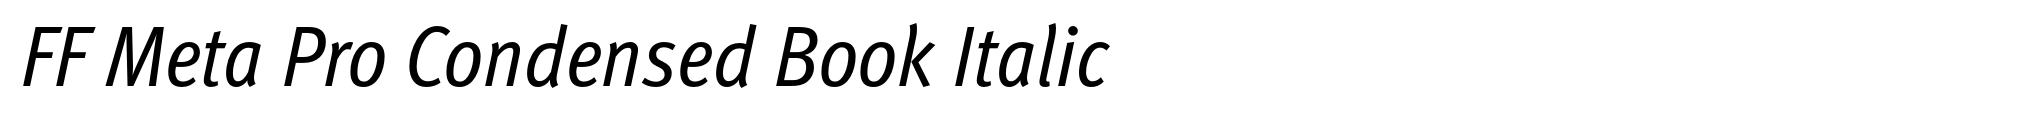 FF Meta Pro Condensed Book Italic image